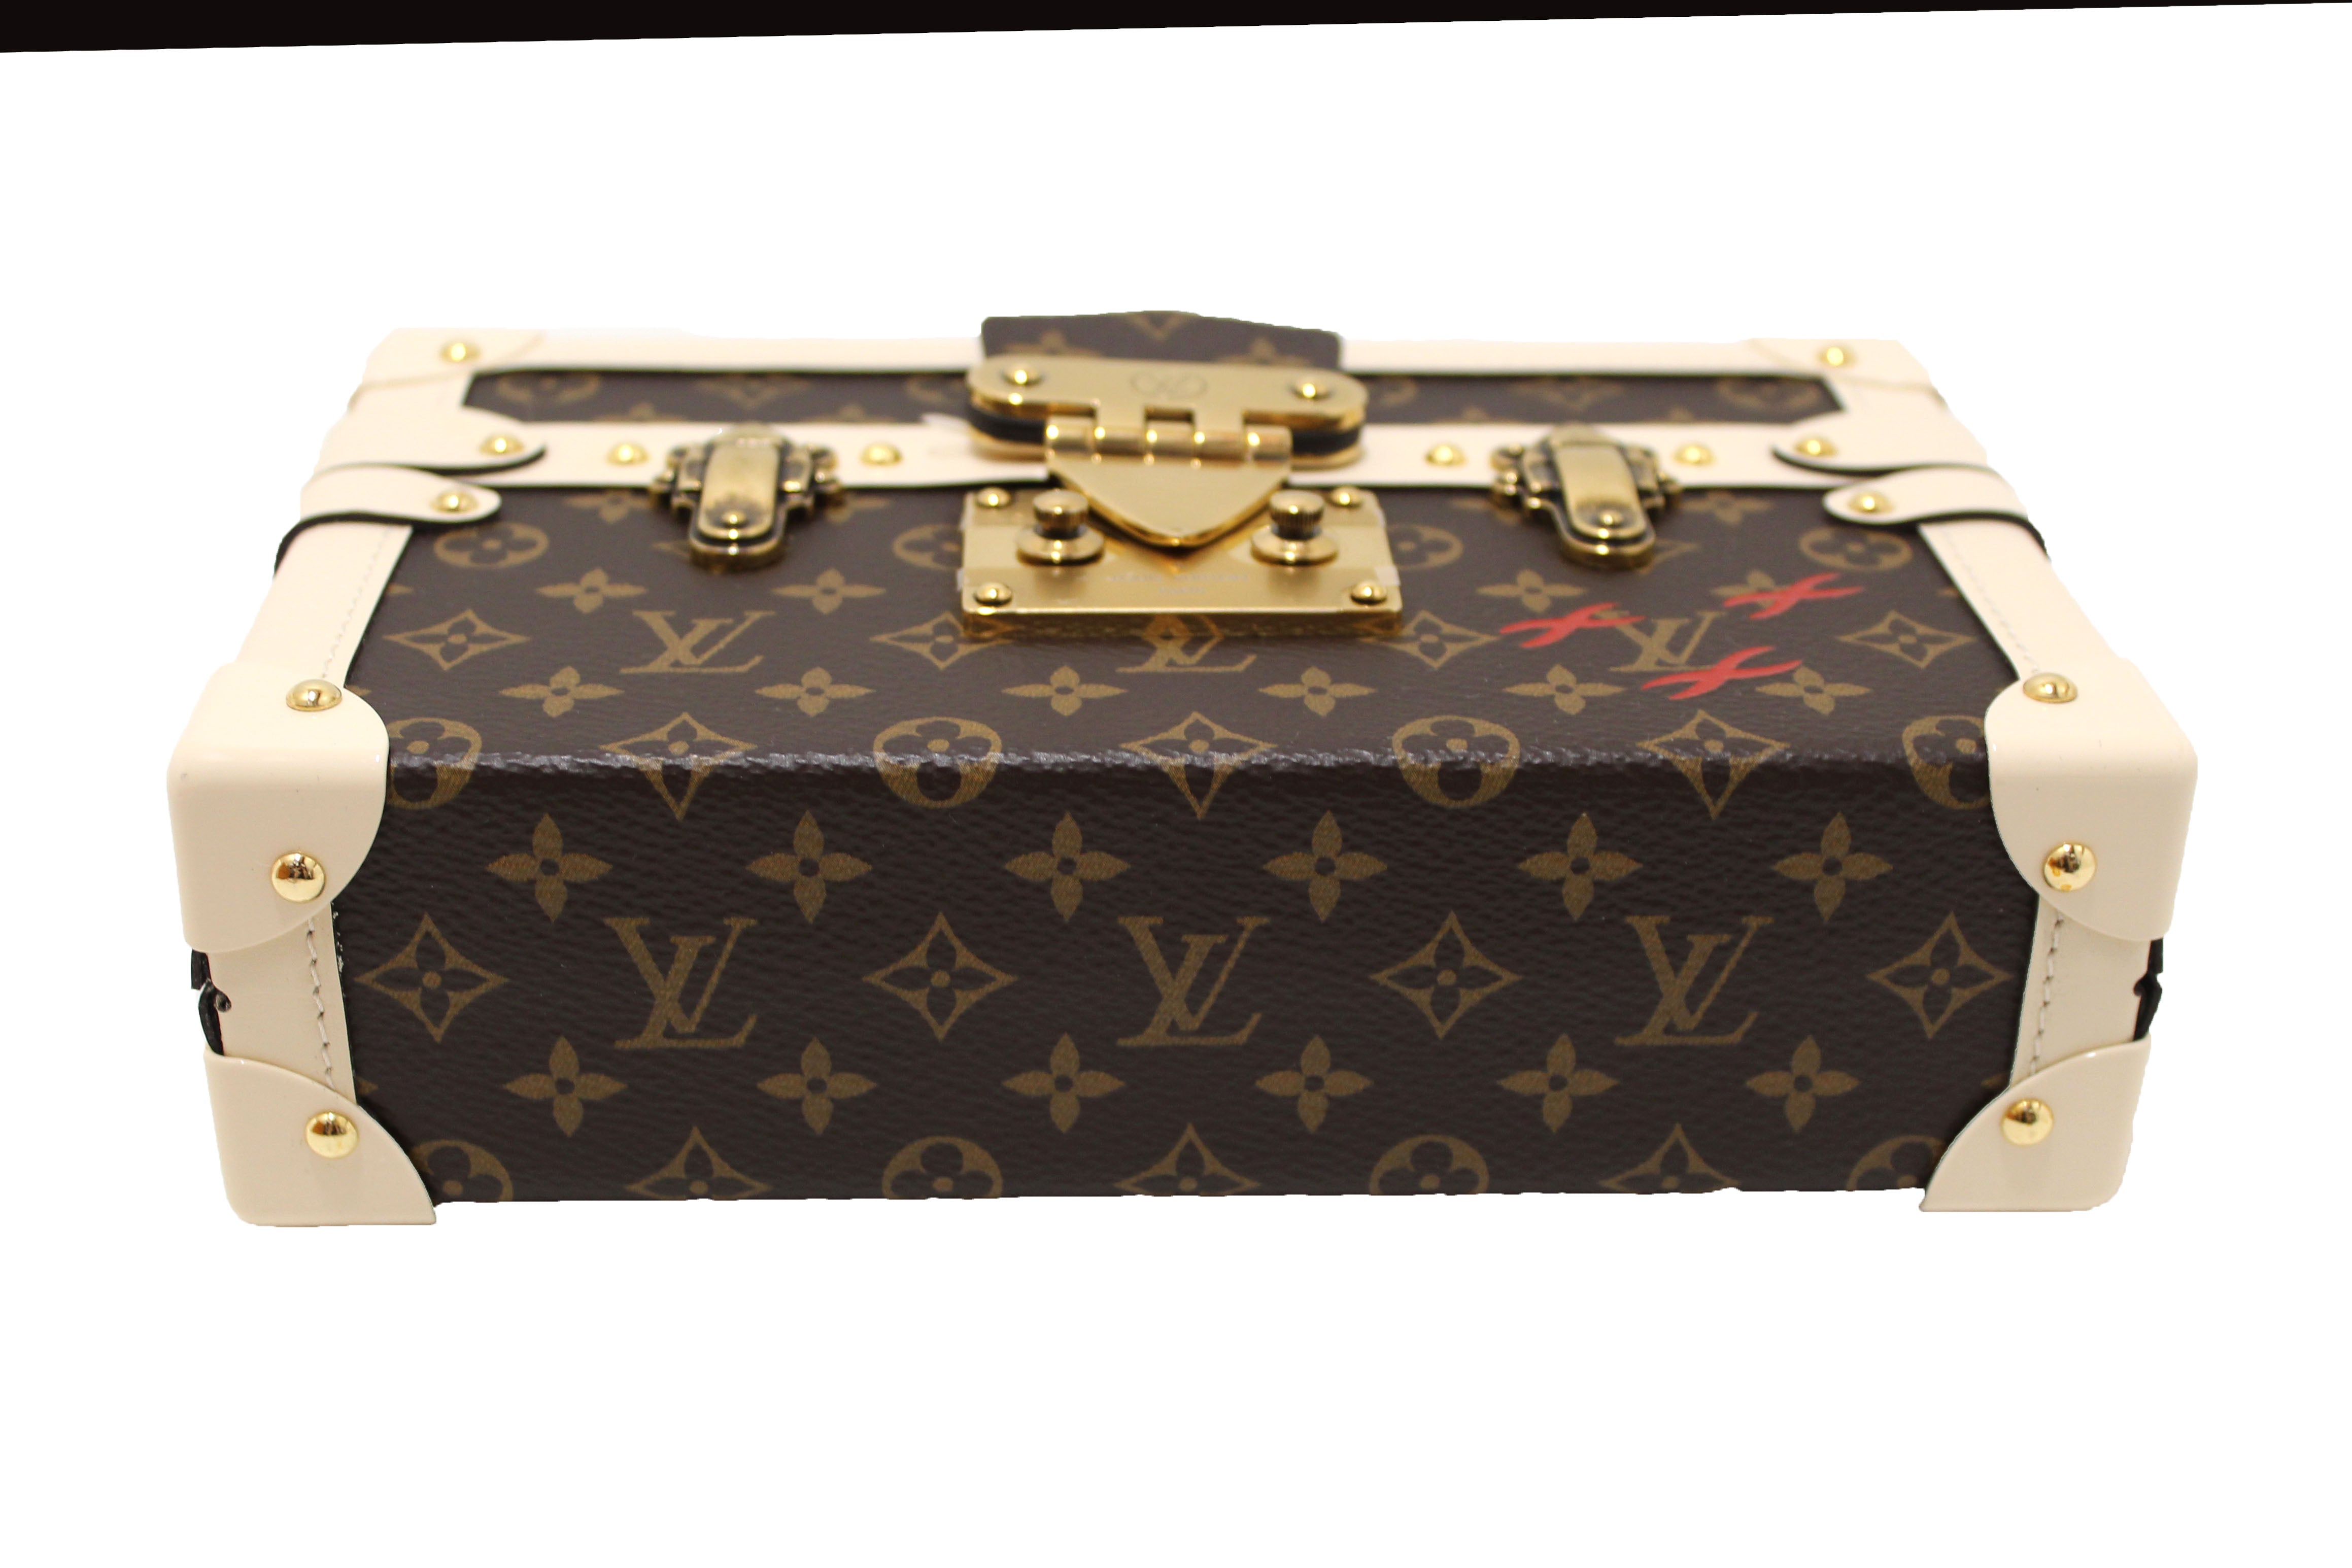 Louis Vuitton Classic Monogram Petite Malle Clutch Bag